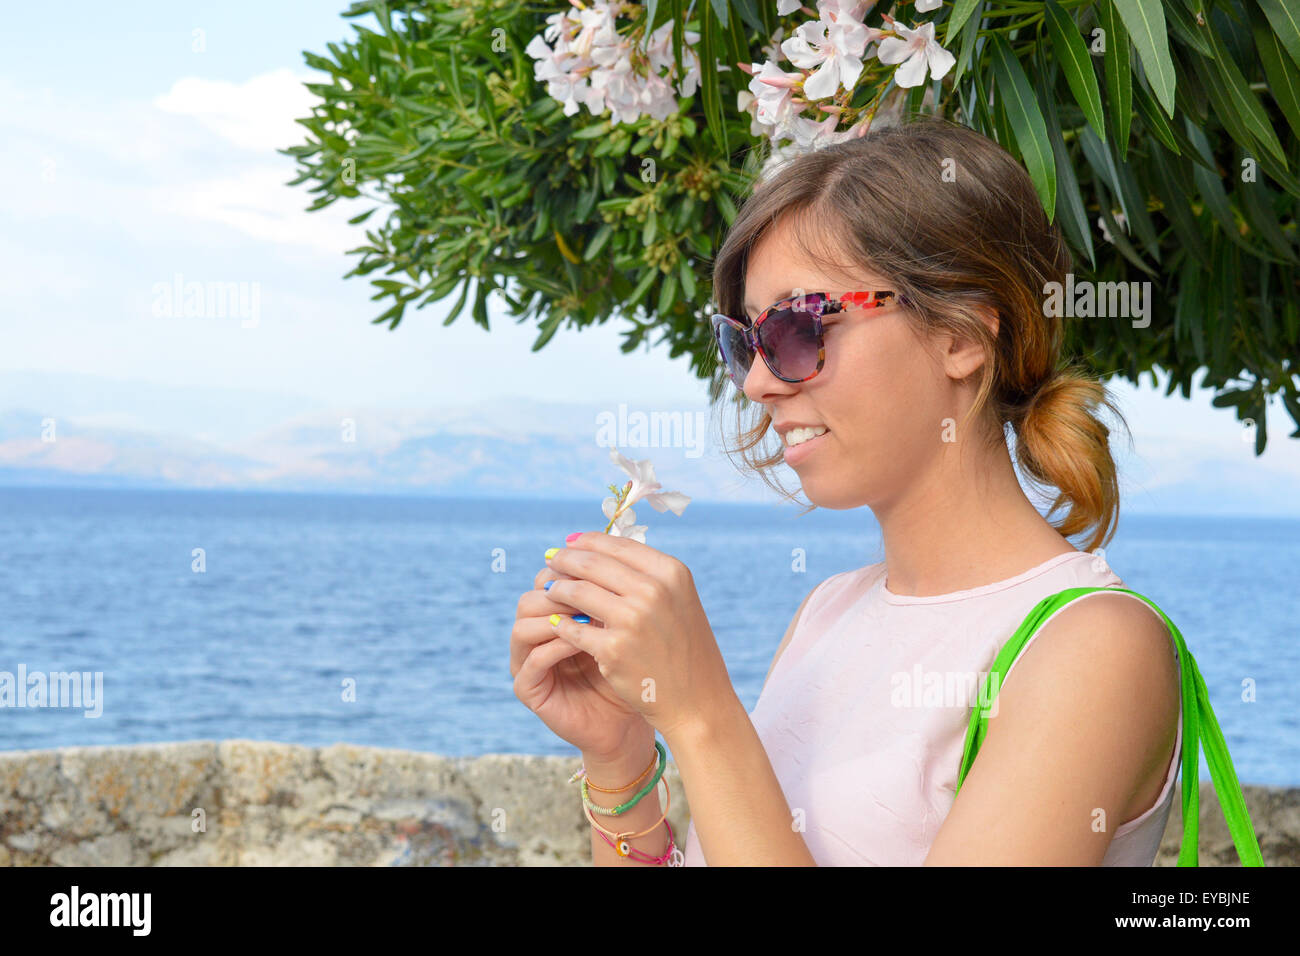 Jeune fille avec des lunettes tenant une fleur blanche dans sa main à la mer Banque D'Images